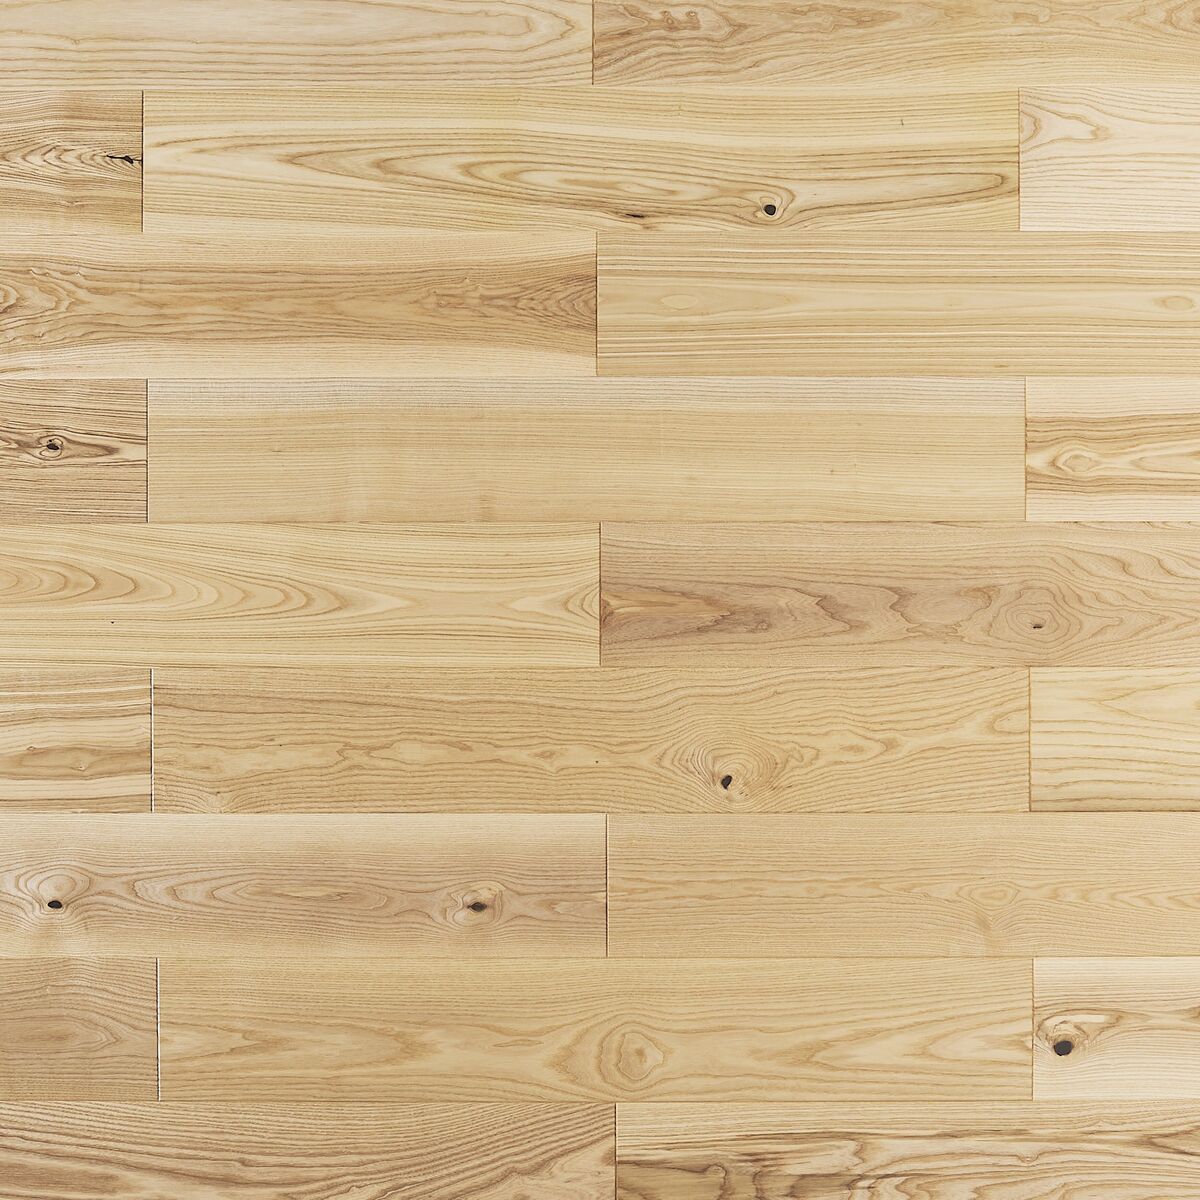 Podłoga drewniana deska trójwarstwowa Jesion 1-lamelowa lakier półmatowy 14 mm Barlinek